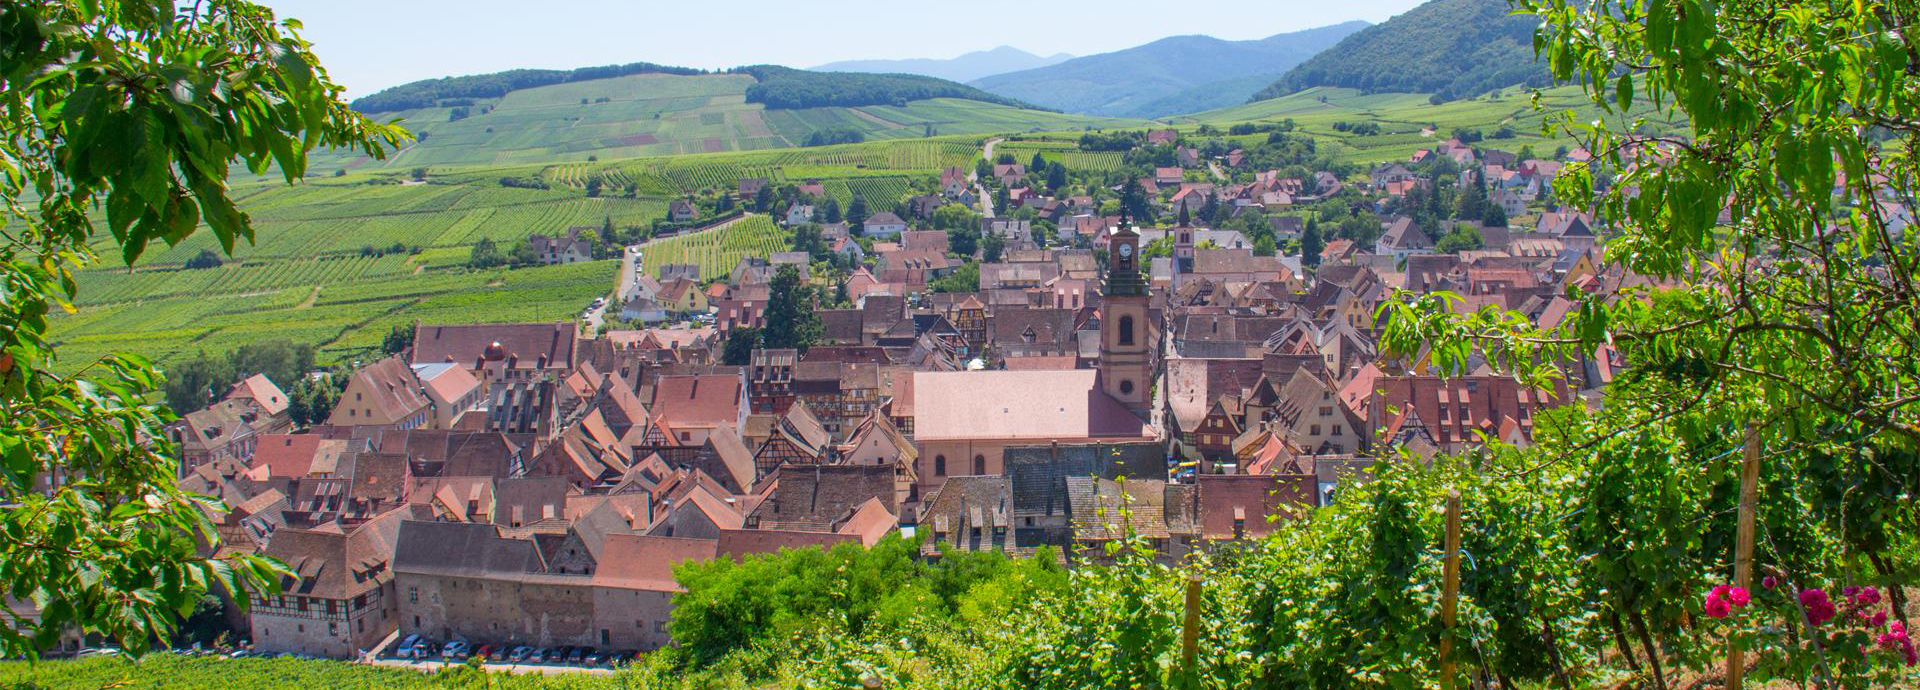 Riquewihr, ancient Roman city of Alsace